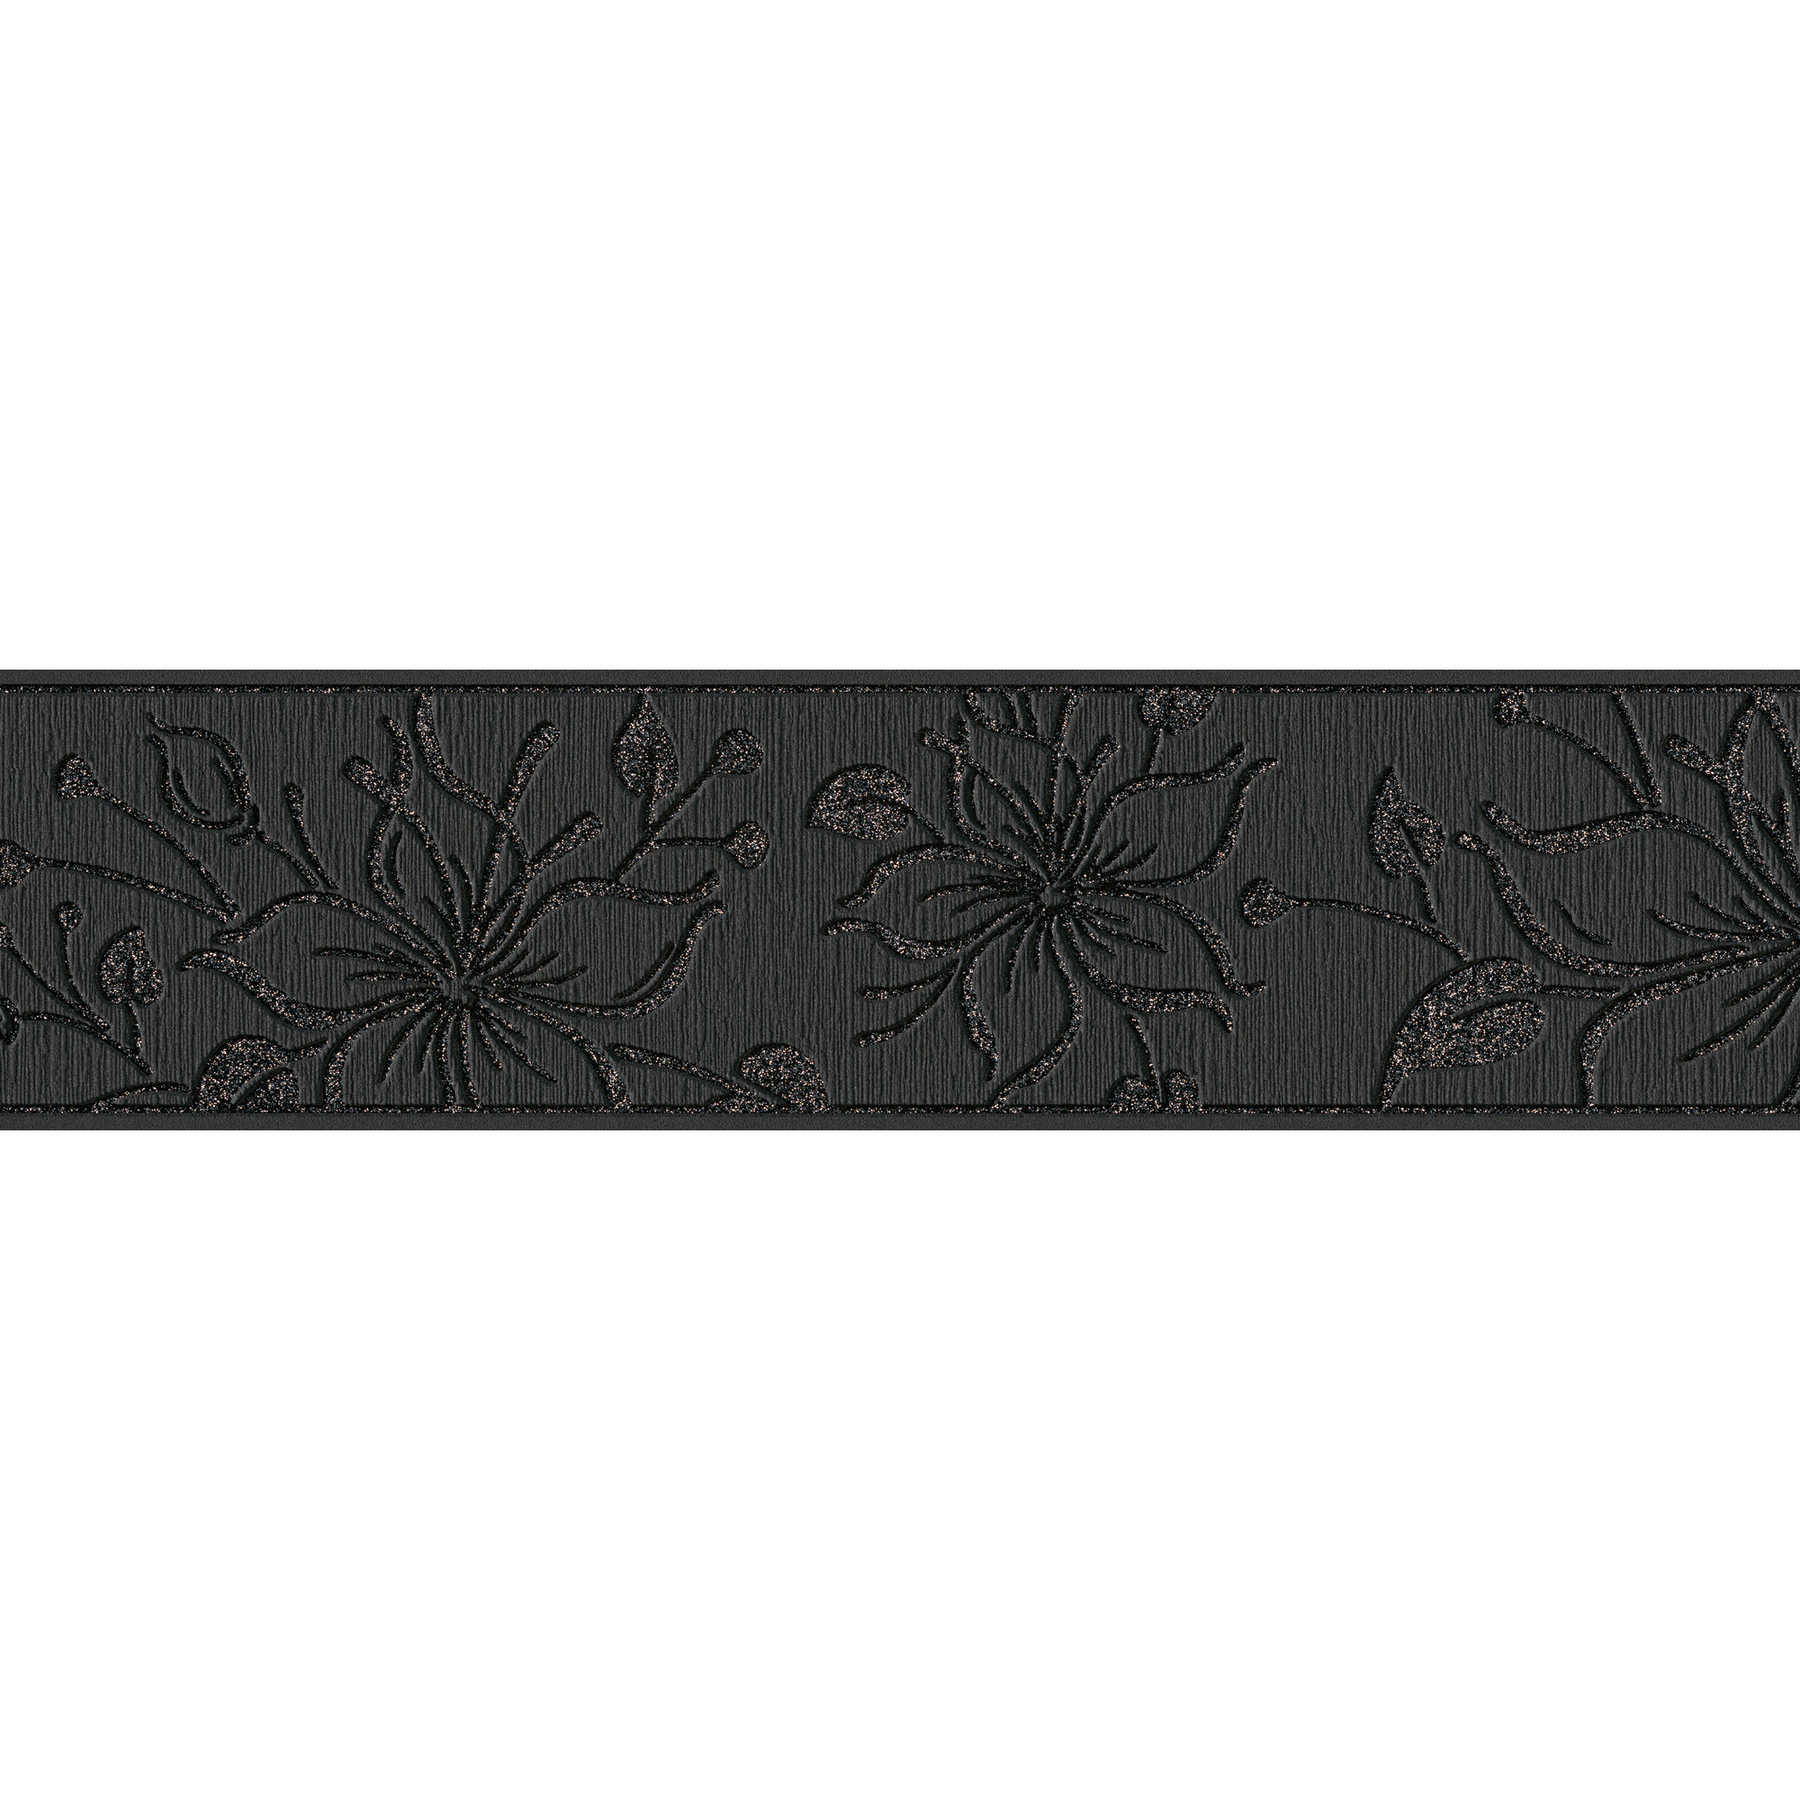         Wallpaper border black flowers & glitter effect - metallic, black
    